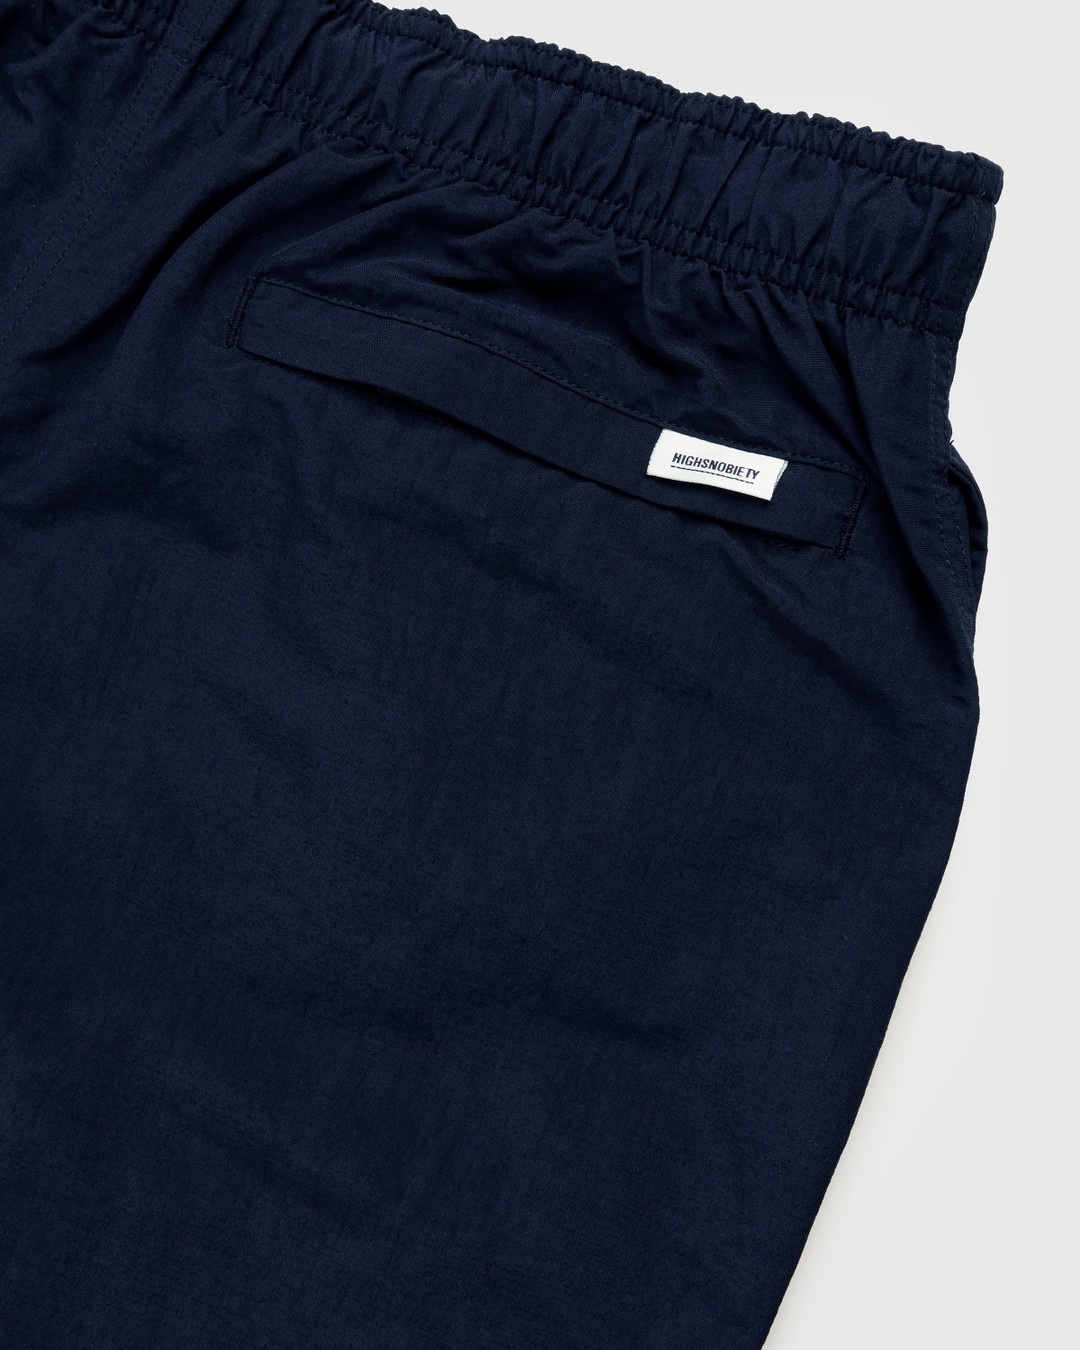 RUF x Highsnobiety – Water Shorts Navy - Shorts - Blue - Image 7